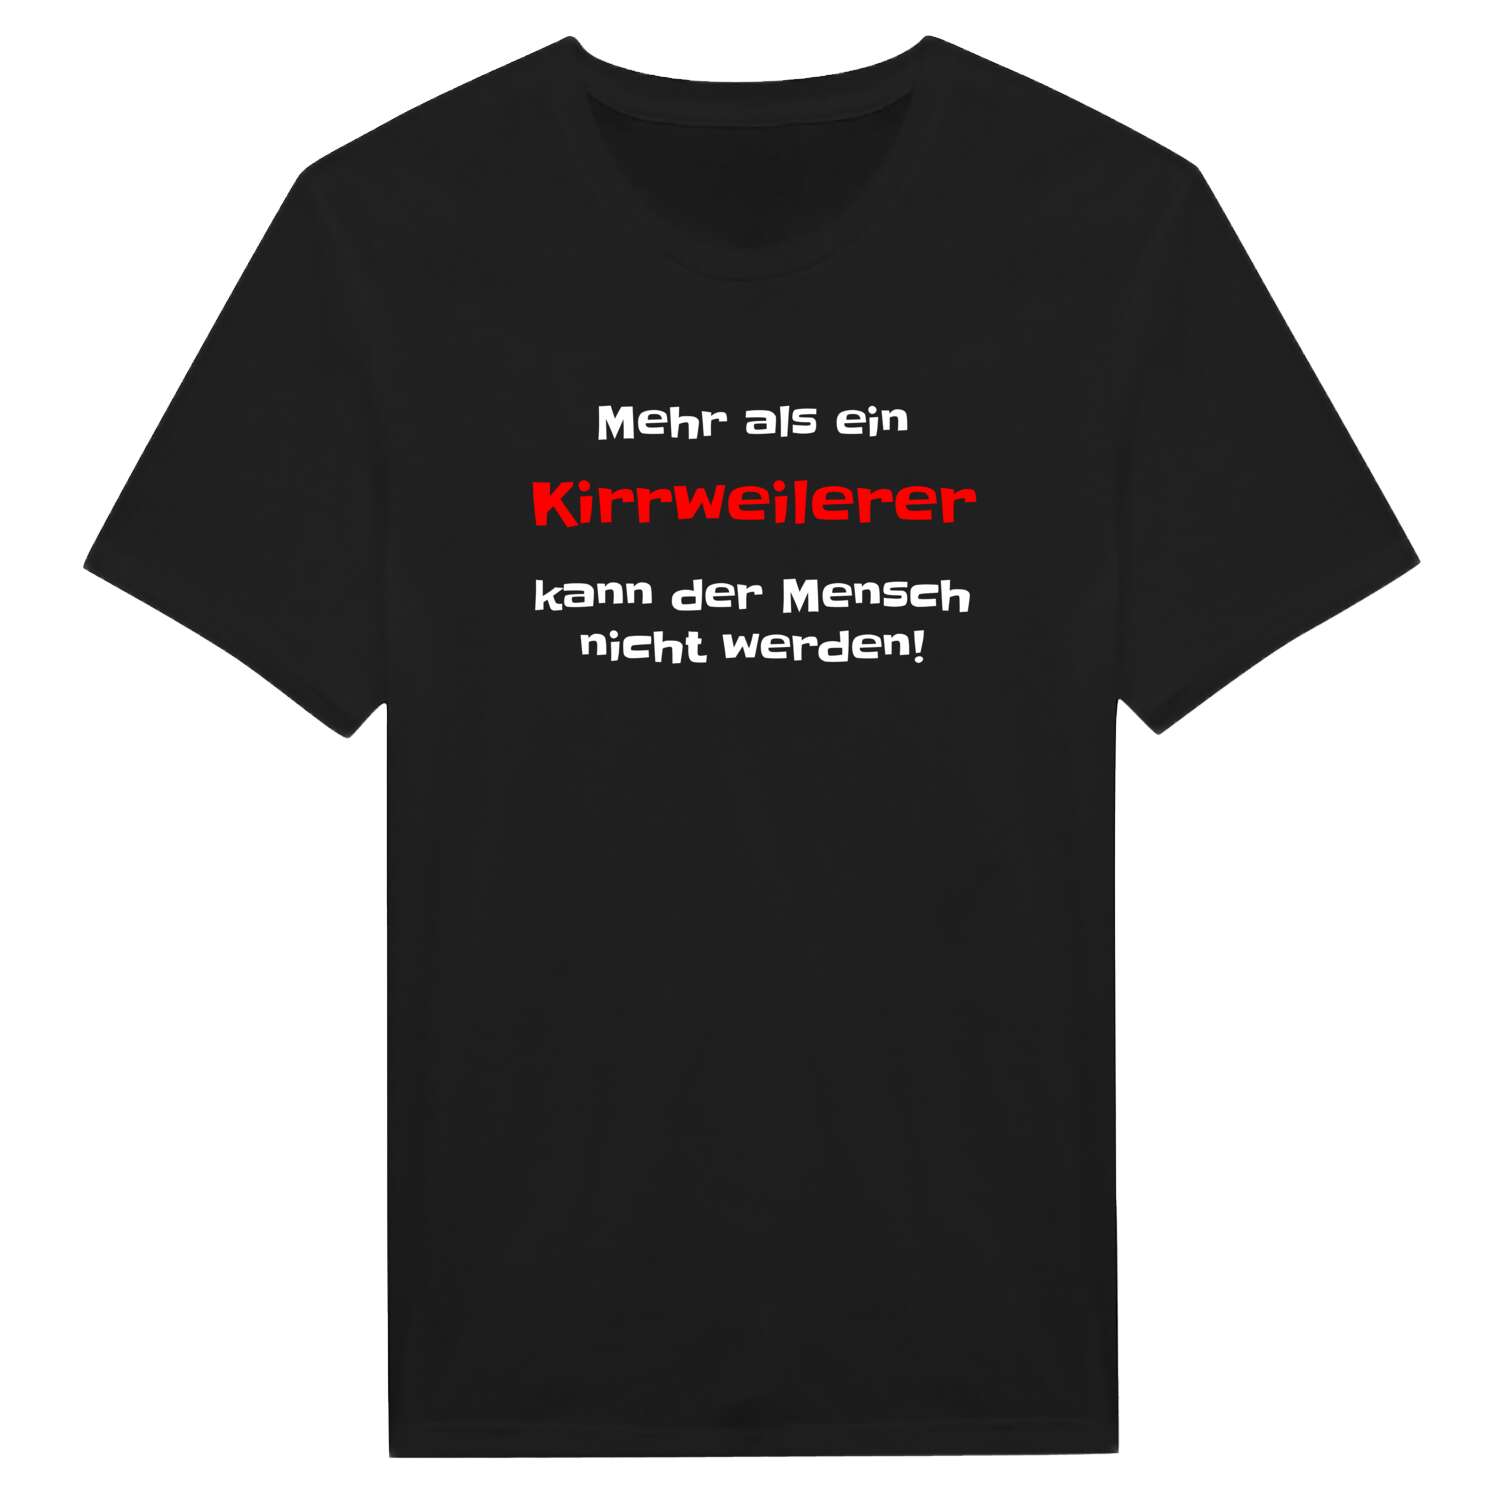 Kirrweiler T-Shirt »Mehr als ein«